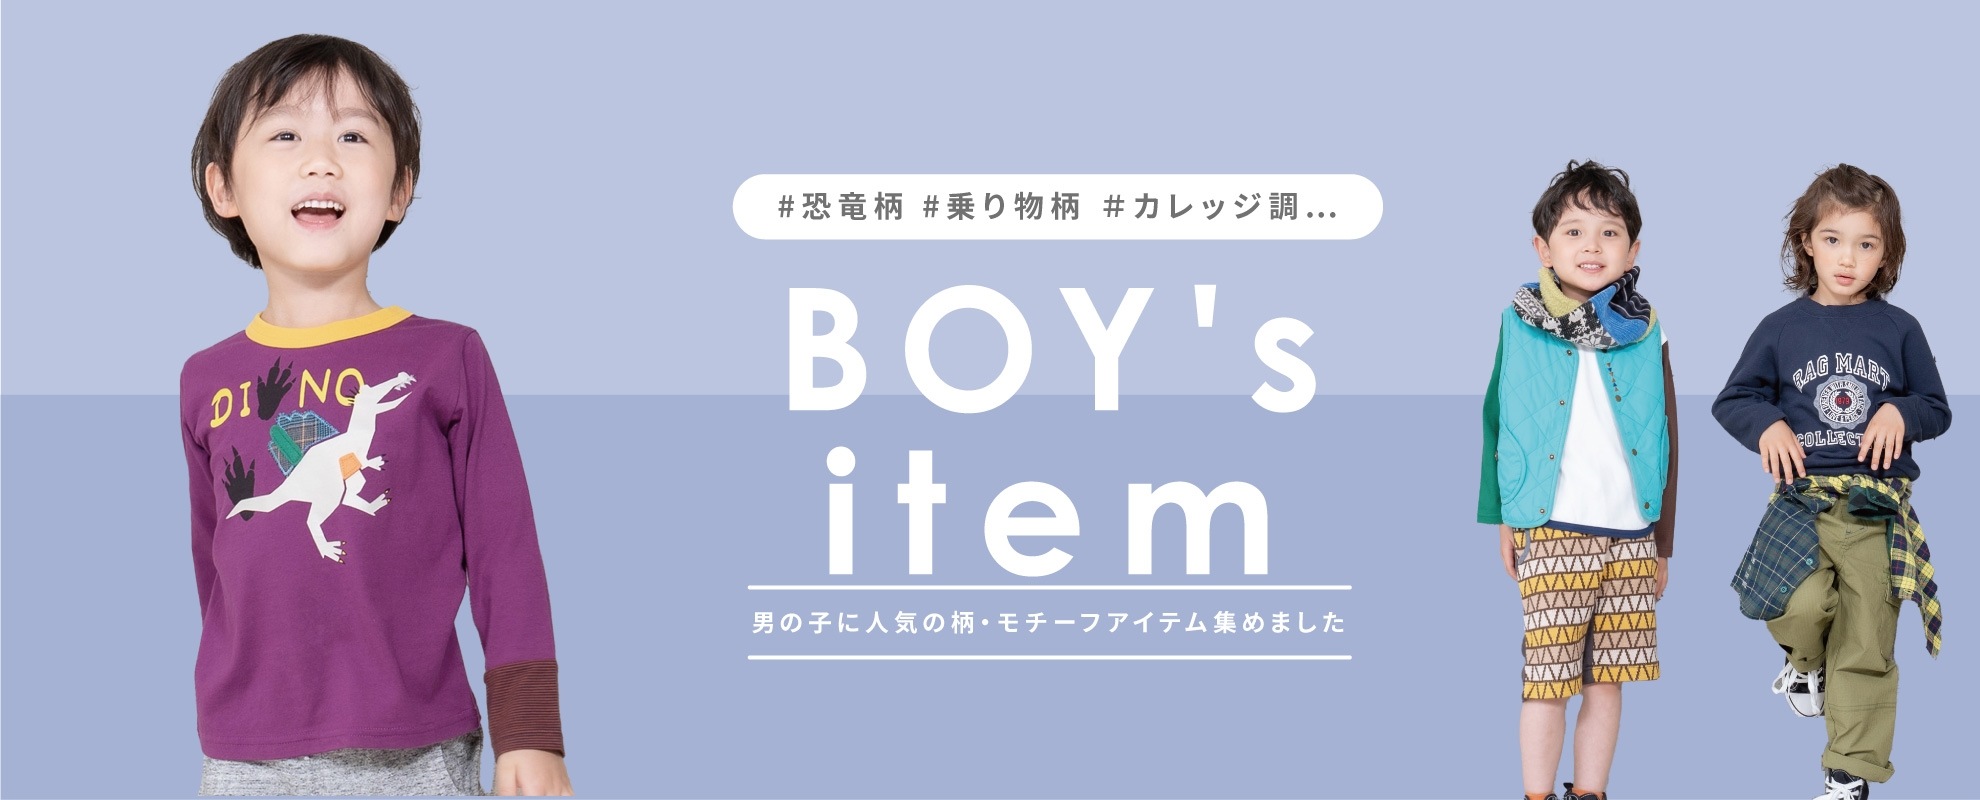 boys item